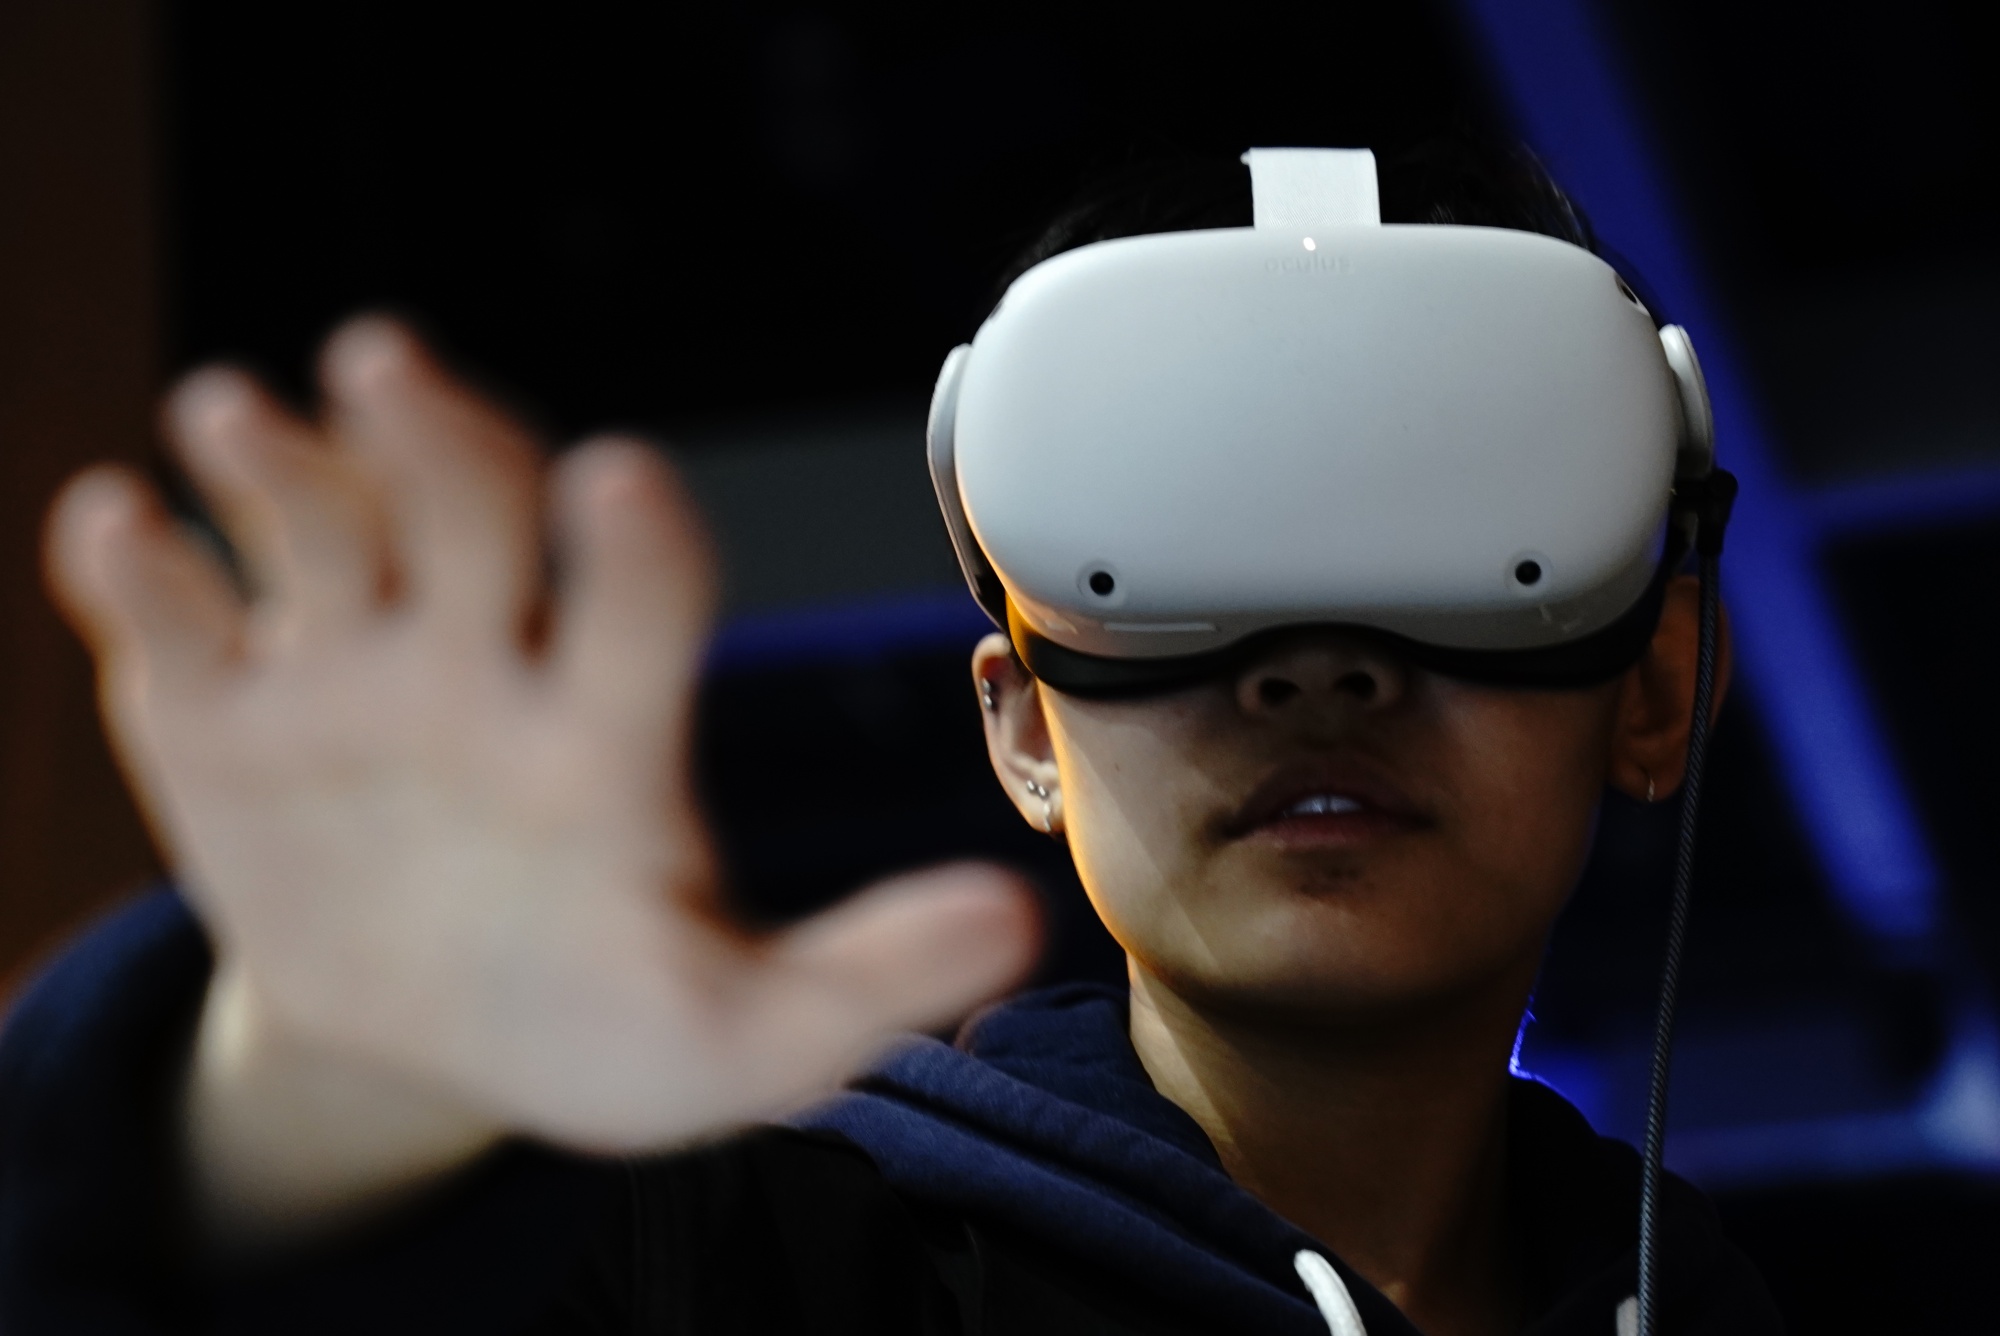 图片展示了一位戴着虚拟现实头盔的人，伸出手掌仿佛在触摸或操控虚拟世界中的物体。